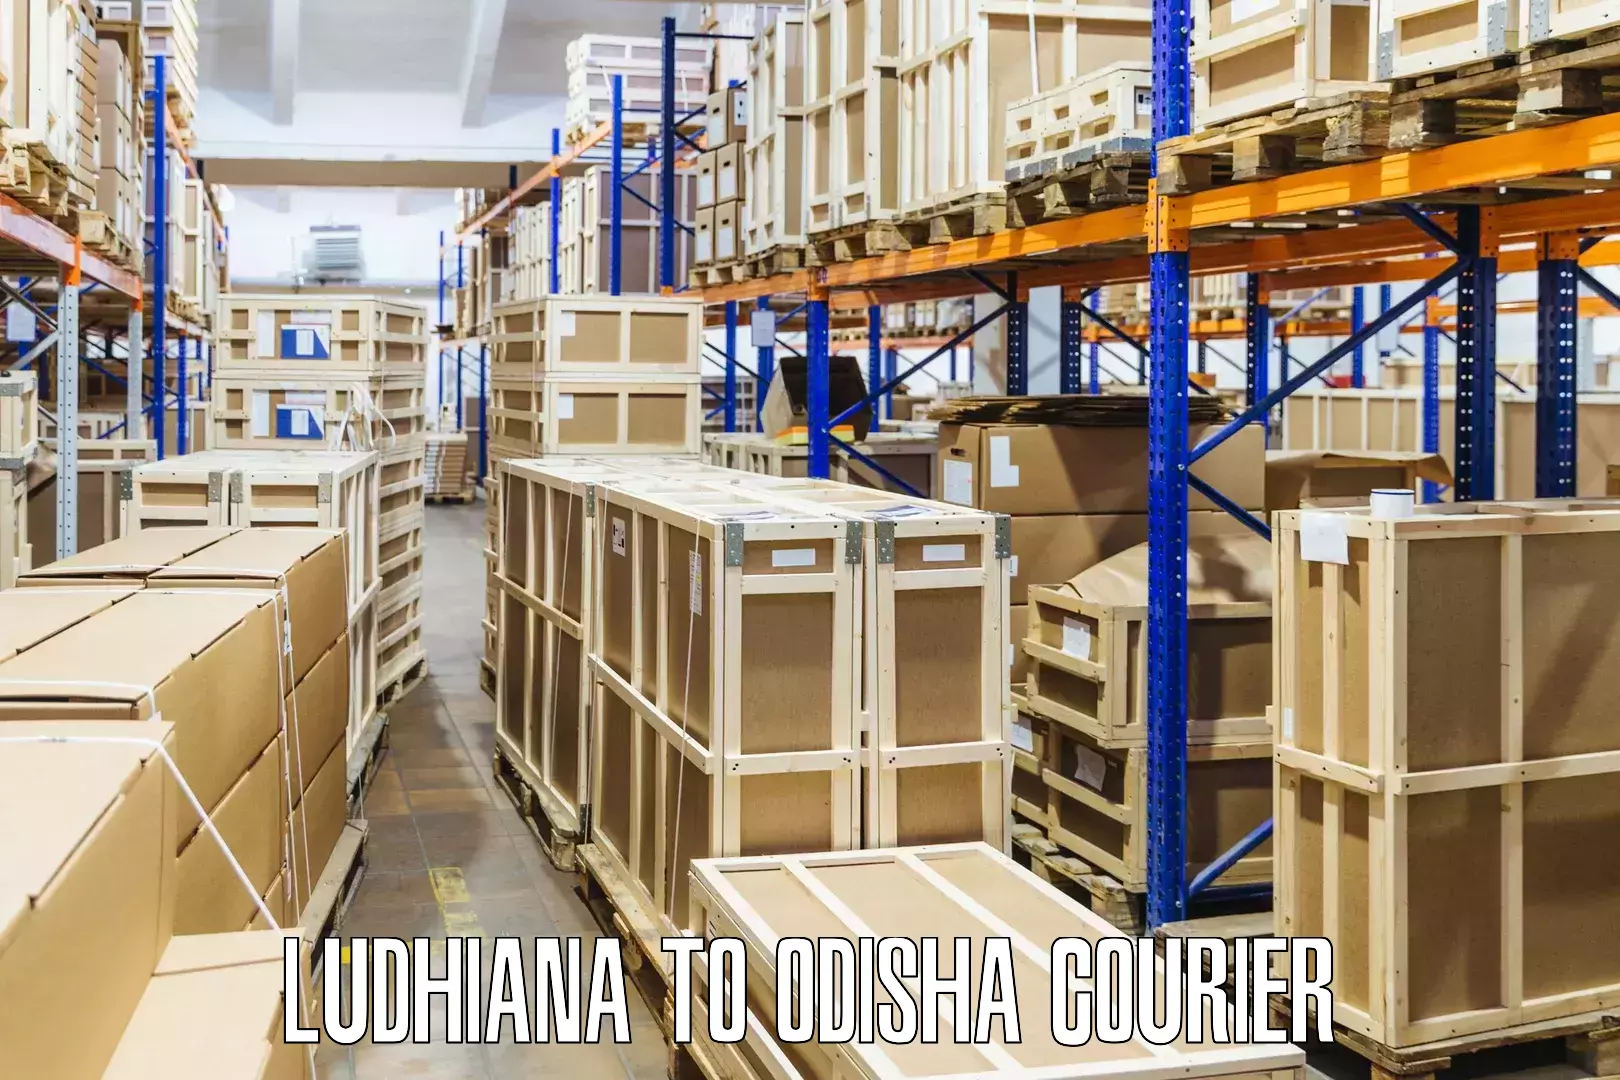 Local delivery service Ludhiana to Komana